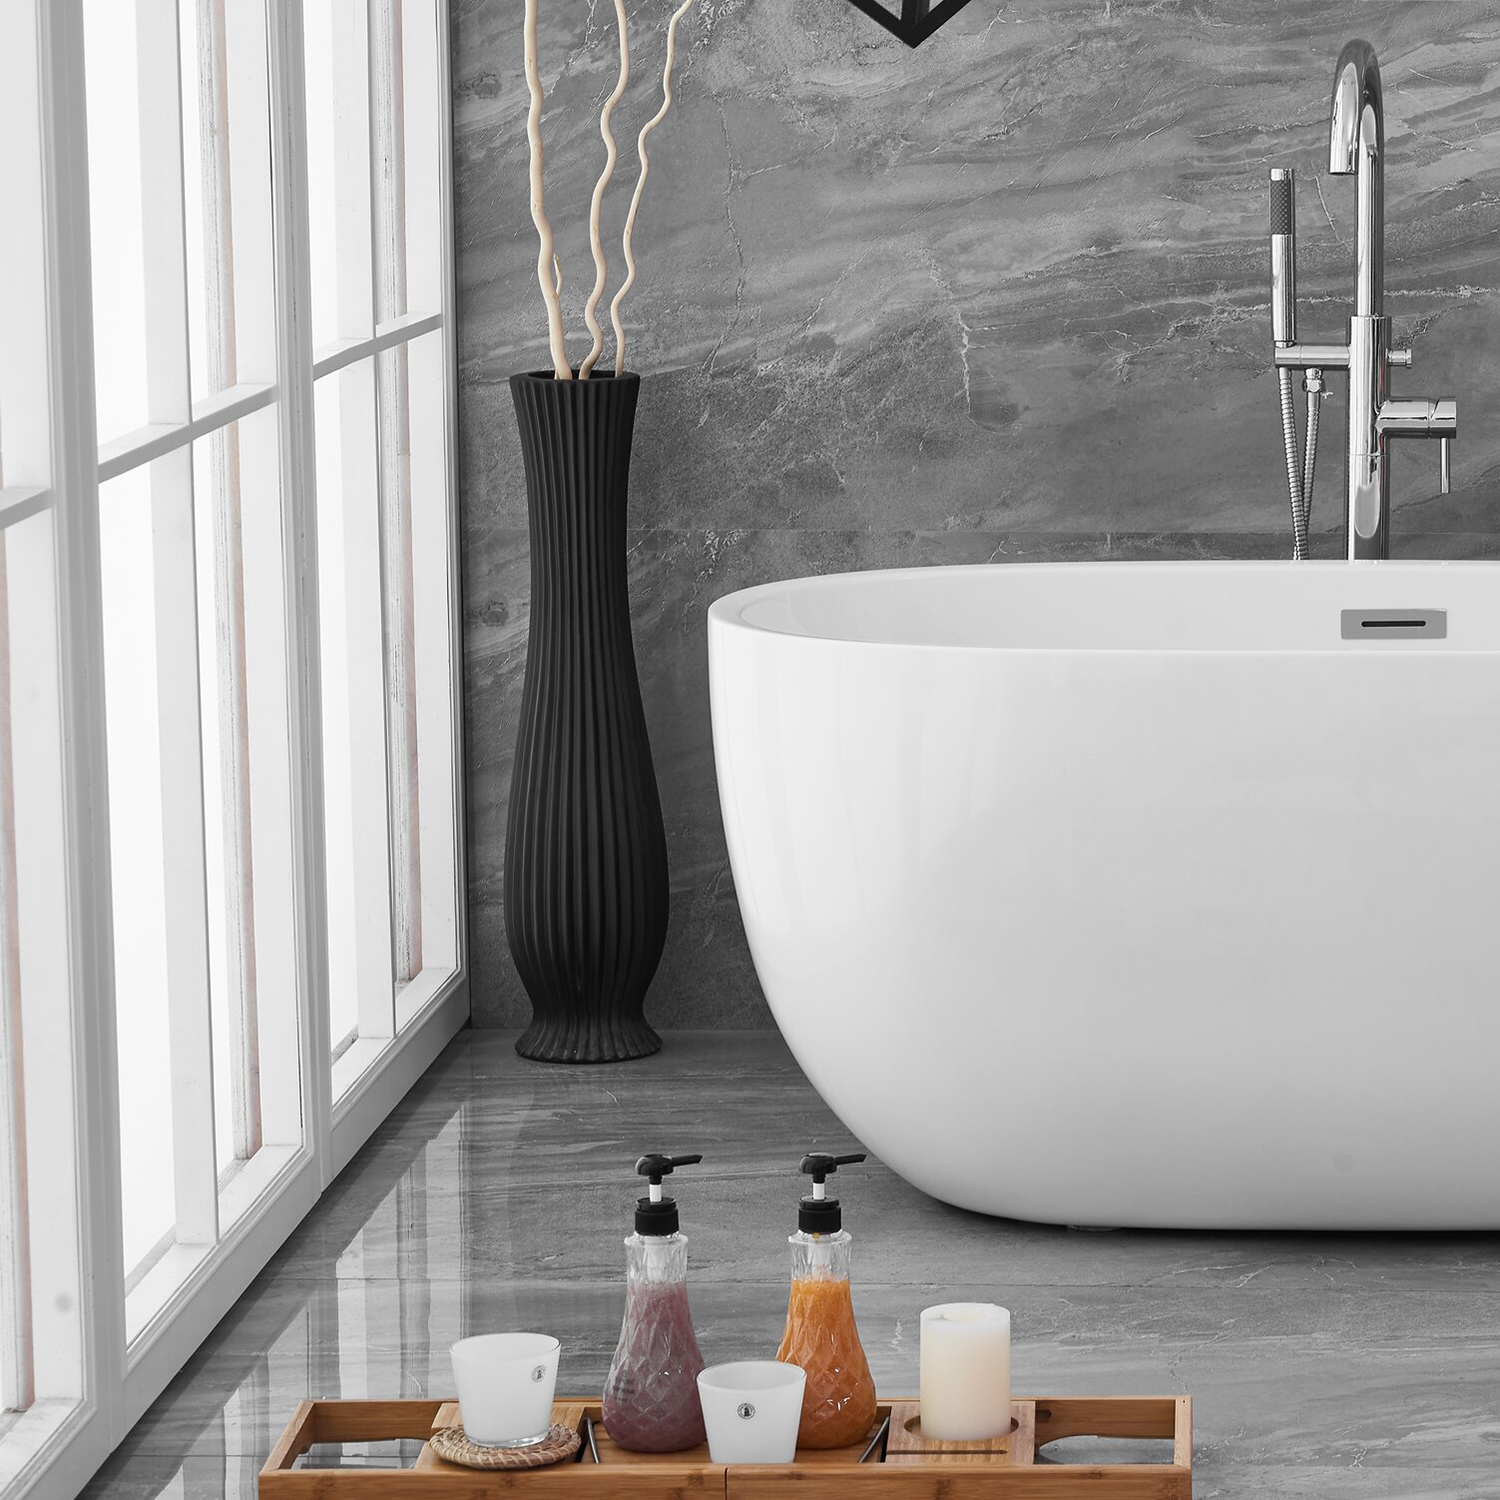 Vasca da bagno indipendente in pietra artificiale con bordo sottile in stile popolare, vasca da bagno indipendente con superficie solida acrilica per hotel